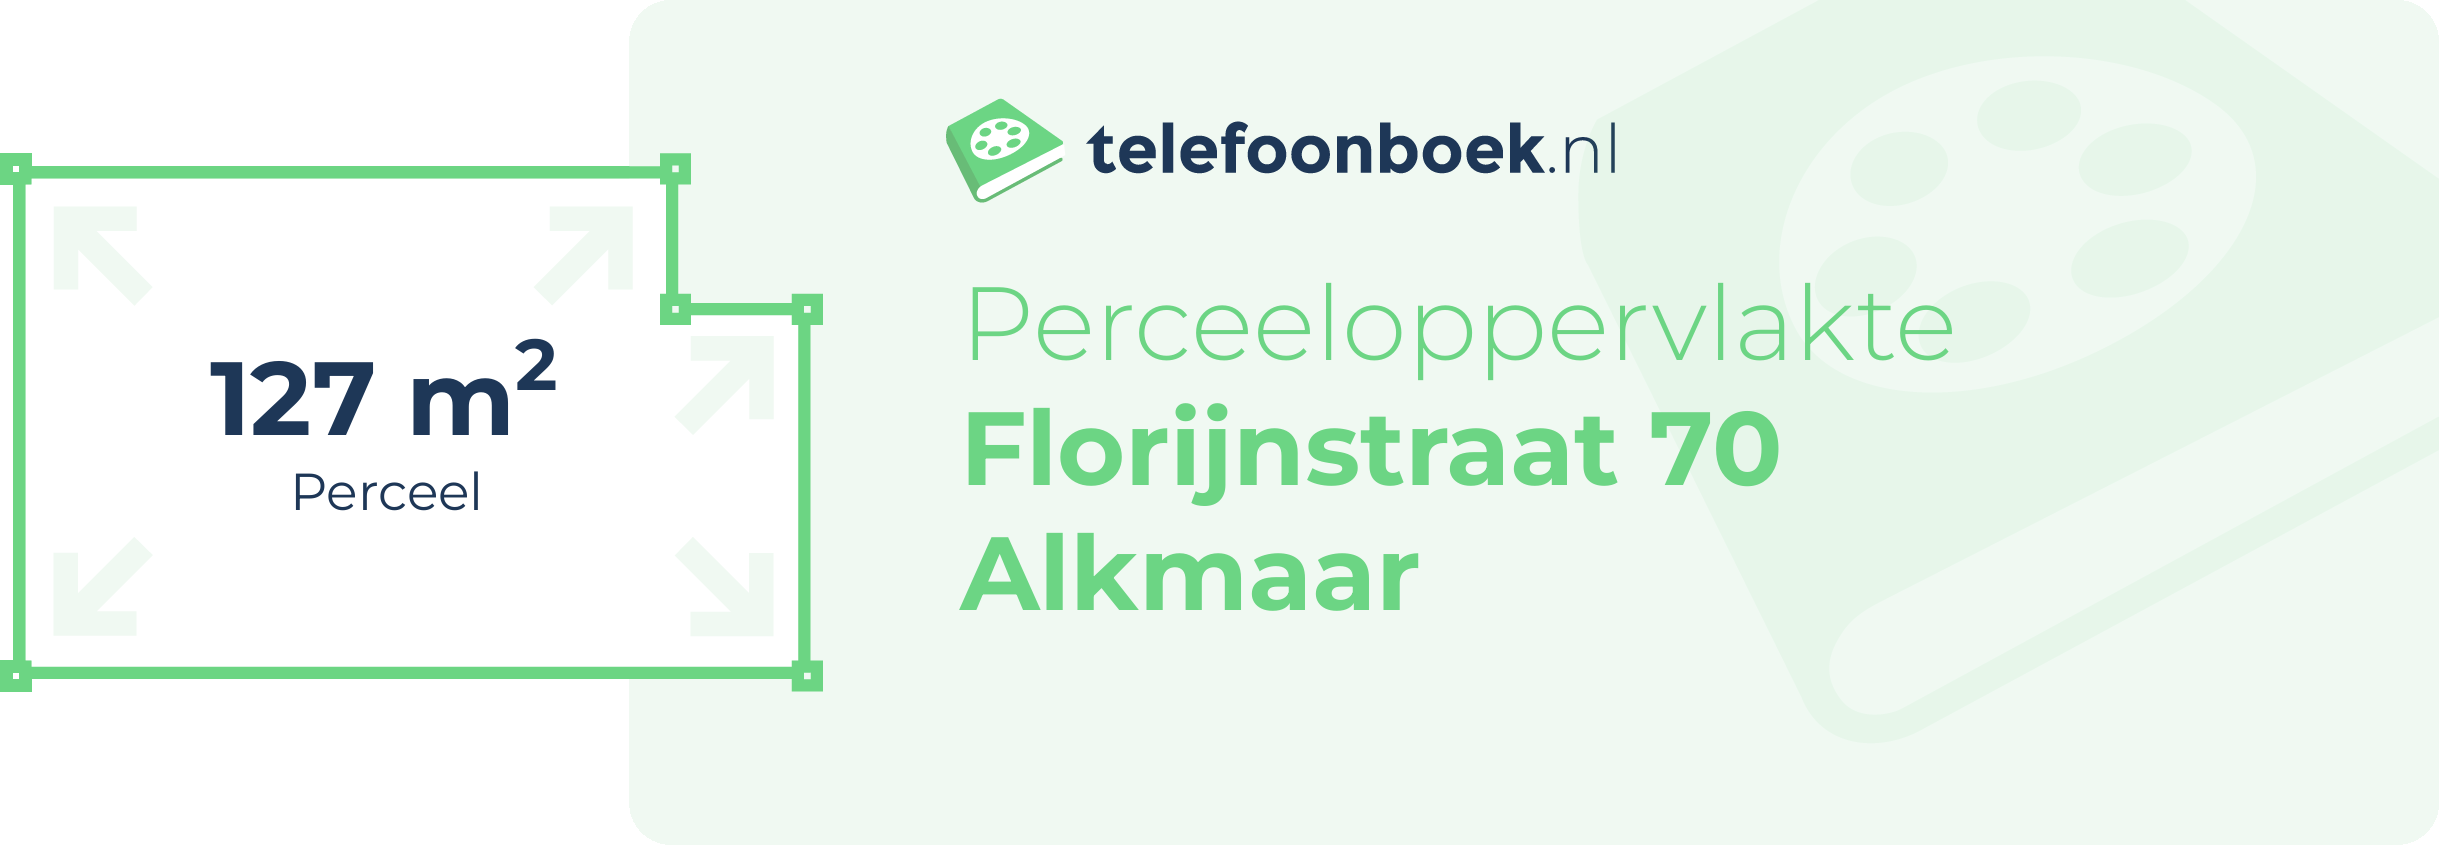 Perceeloppervlakte Florijnstraat 70 Alkmaar